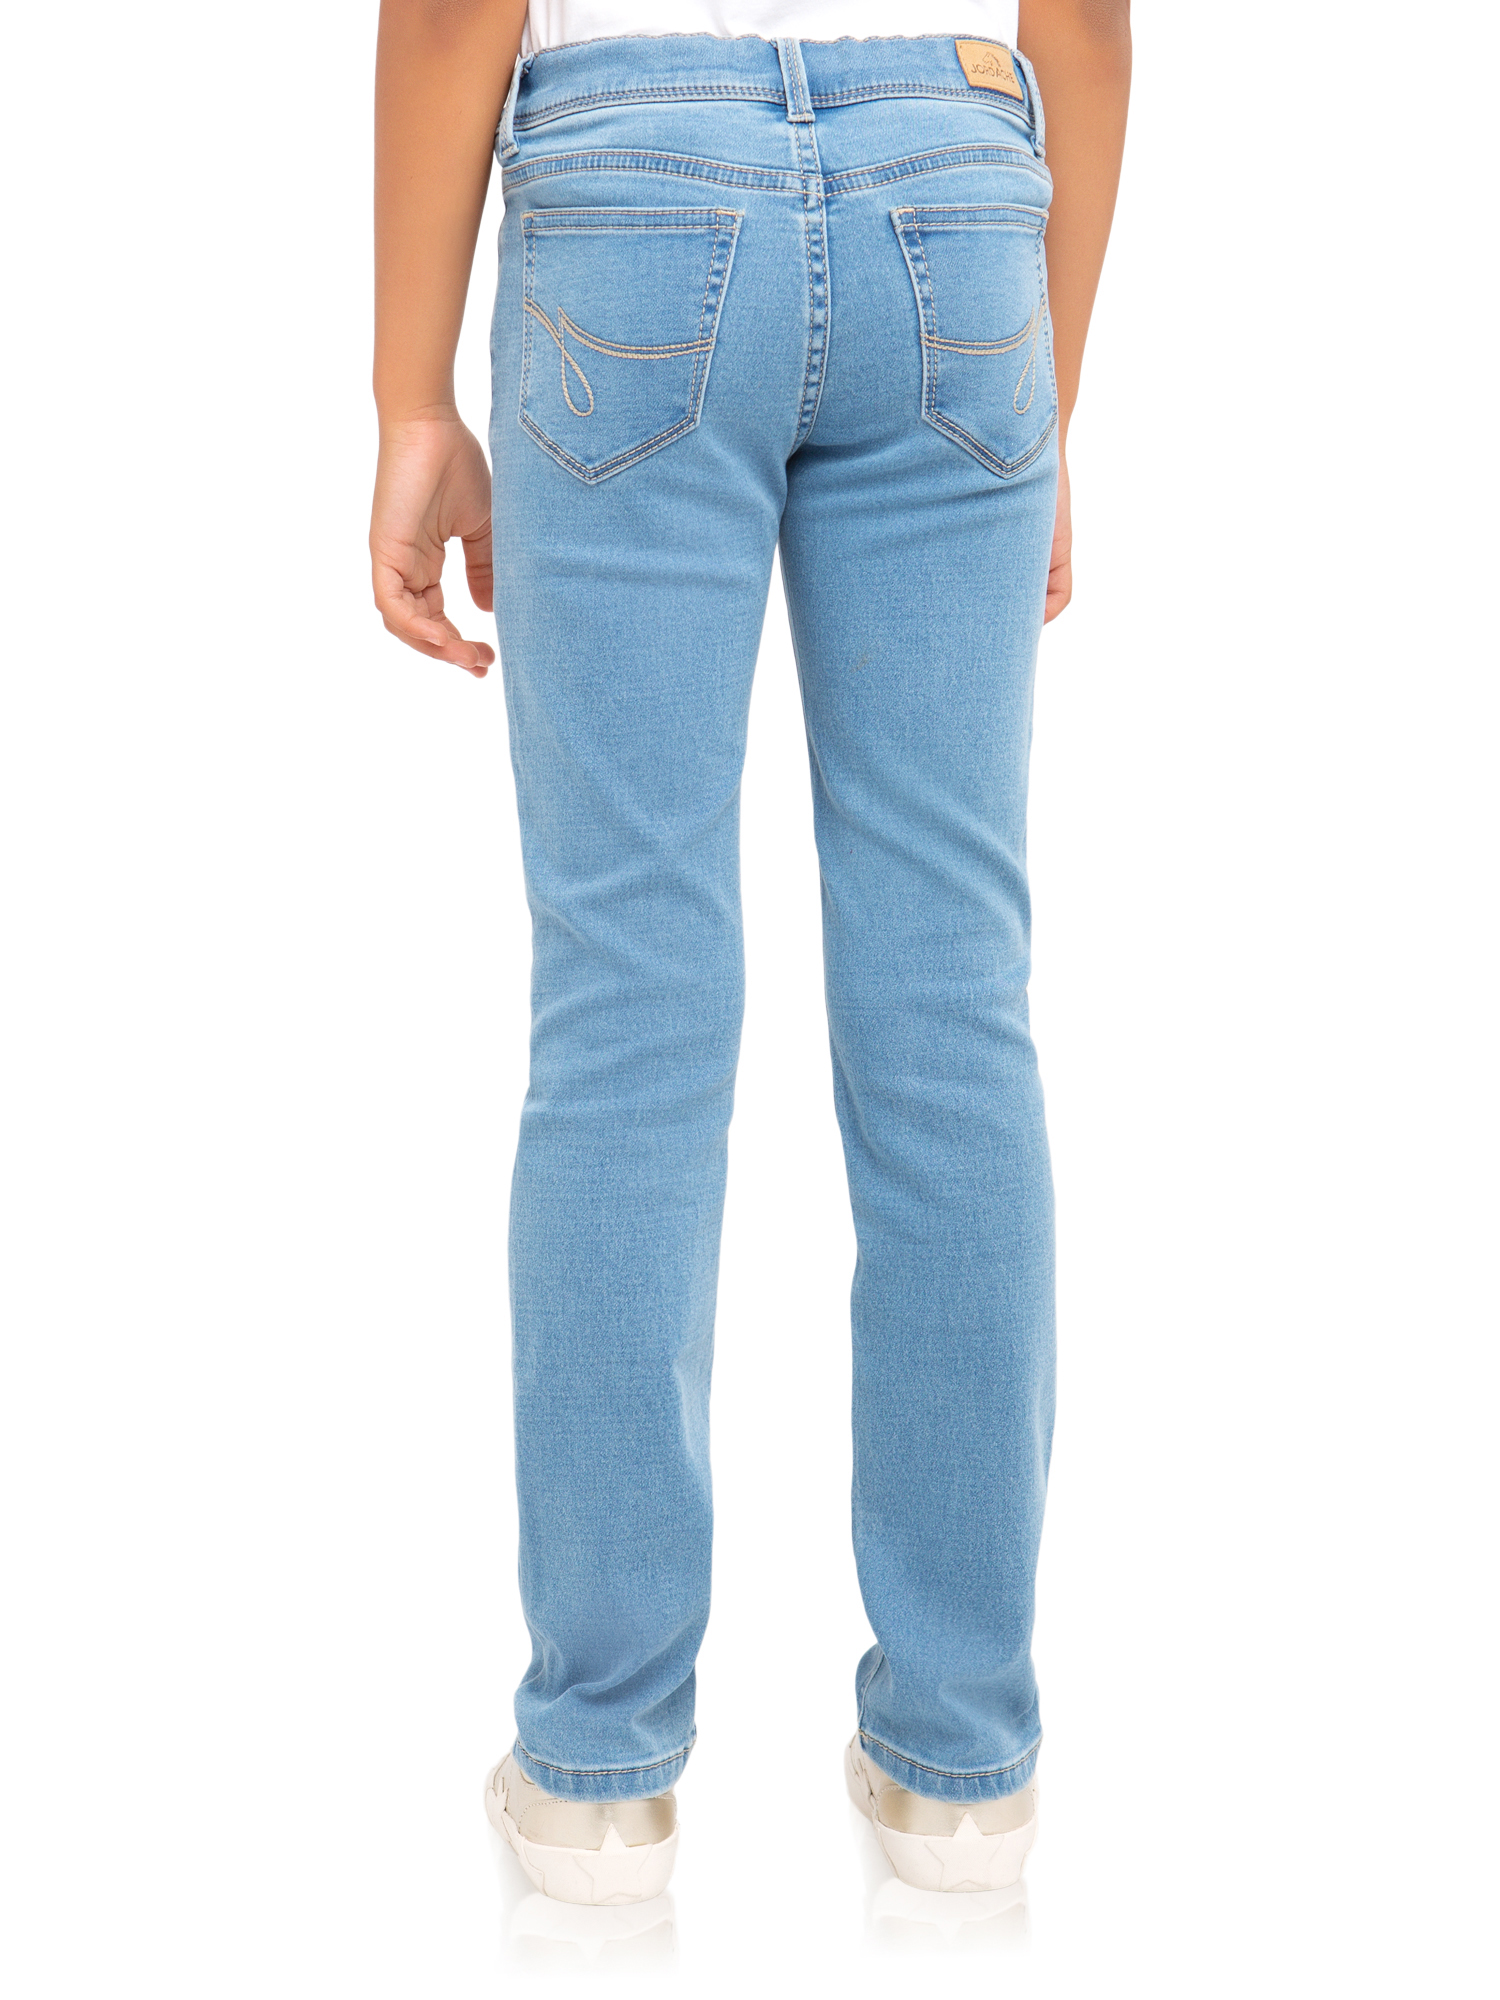 Jordache Girls Skinny Jeans, Sizes 5-18 - Walmart.com